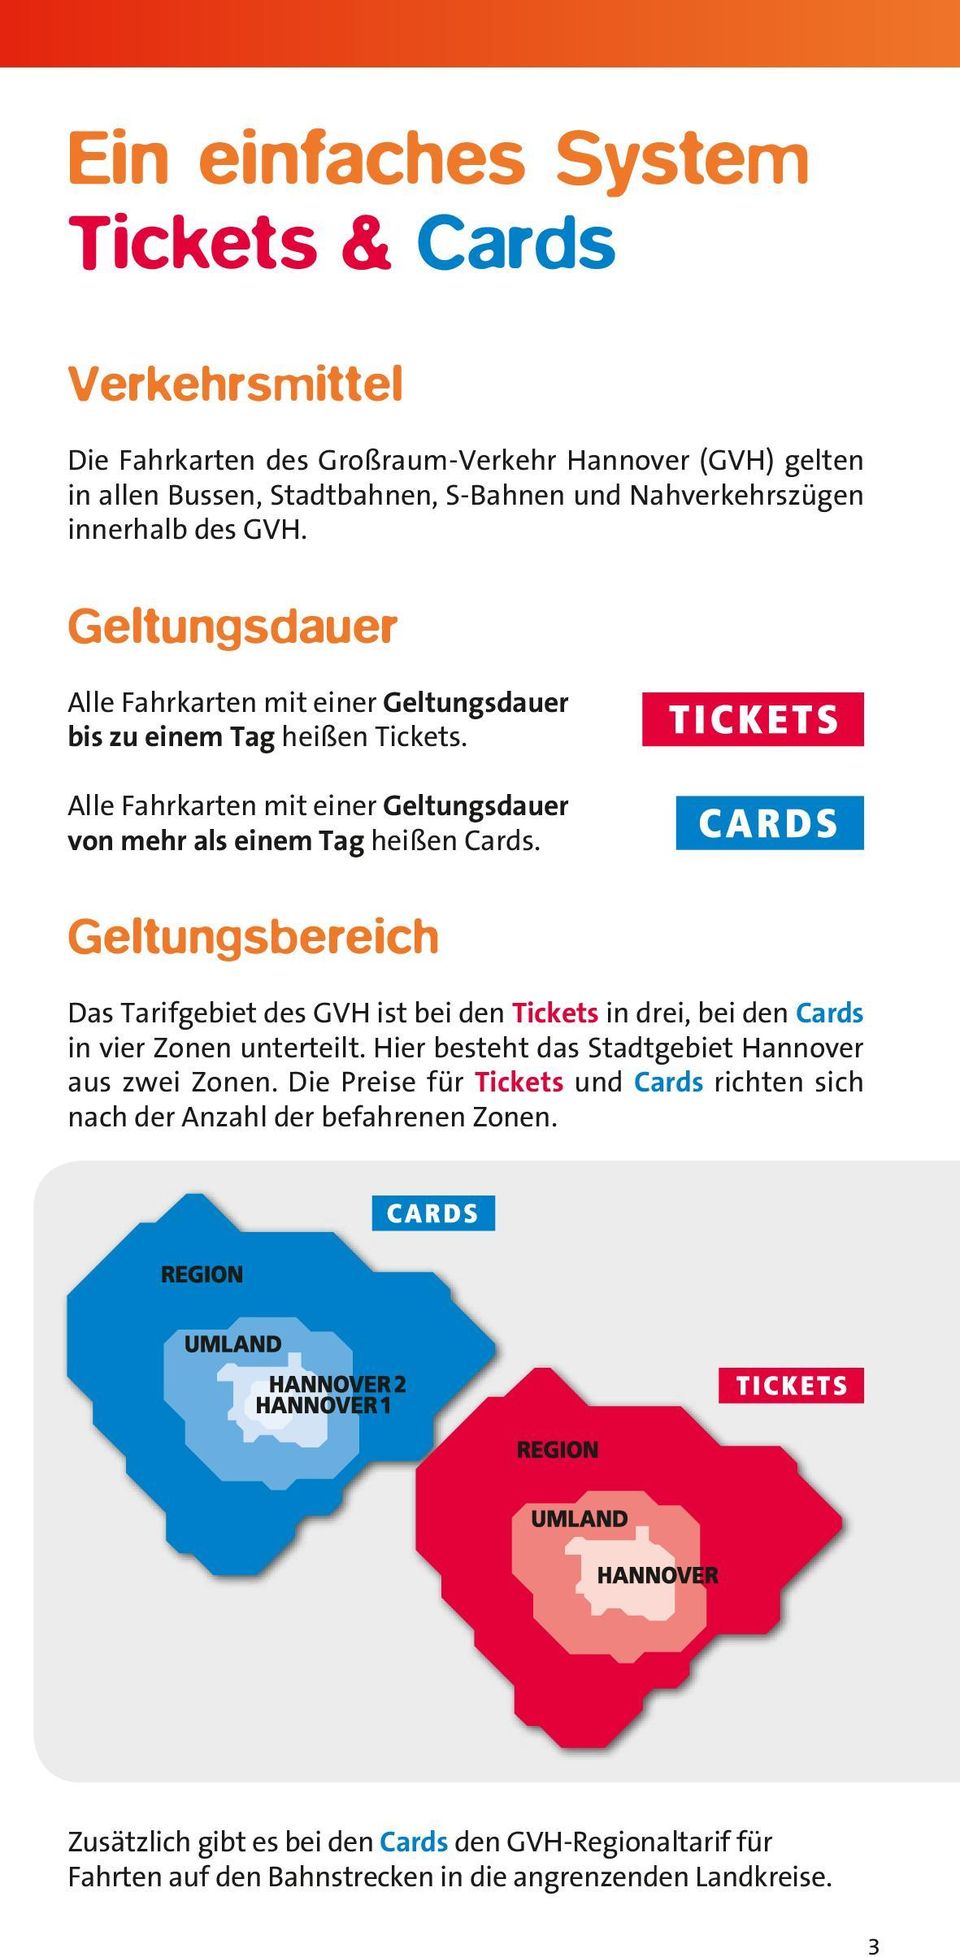 Geltungsbereich Das Tarifgebiet des GVH ist bei den Tickets in drei, bei den Cards in vier Zonen unterteilt. Hier be steht das Stadtgebiet Hannover aus zwei Zonen.